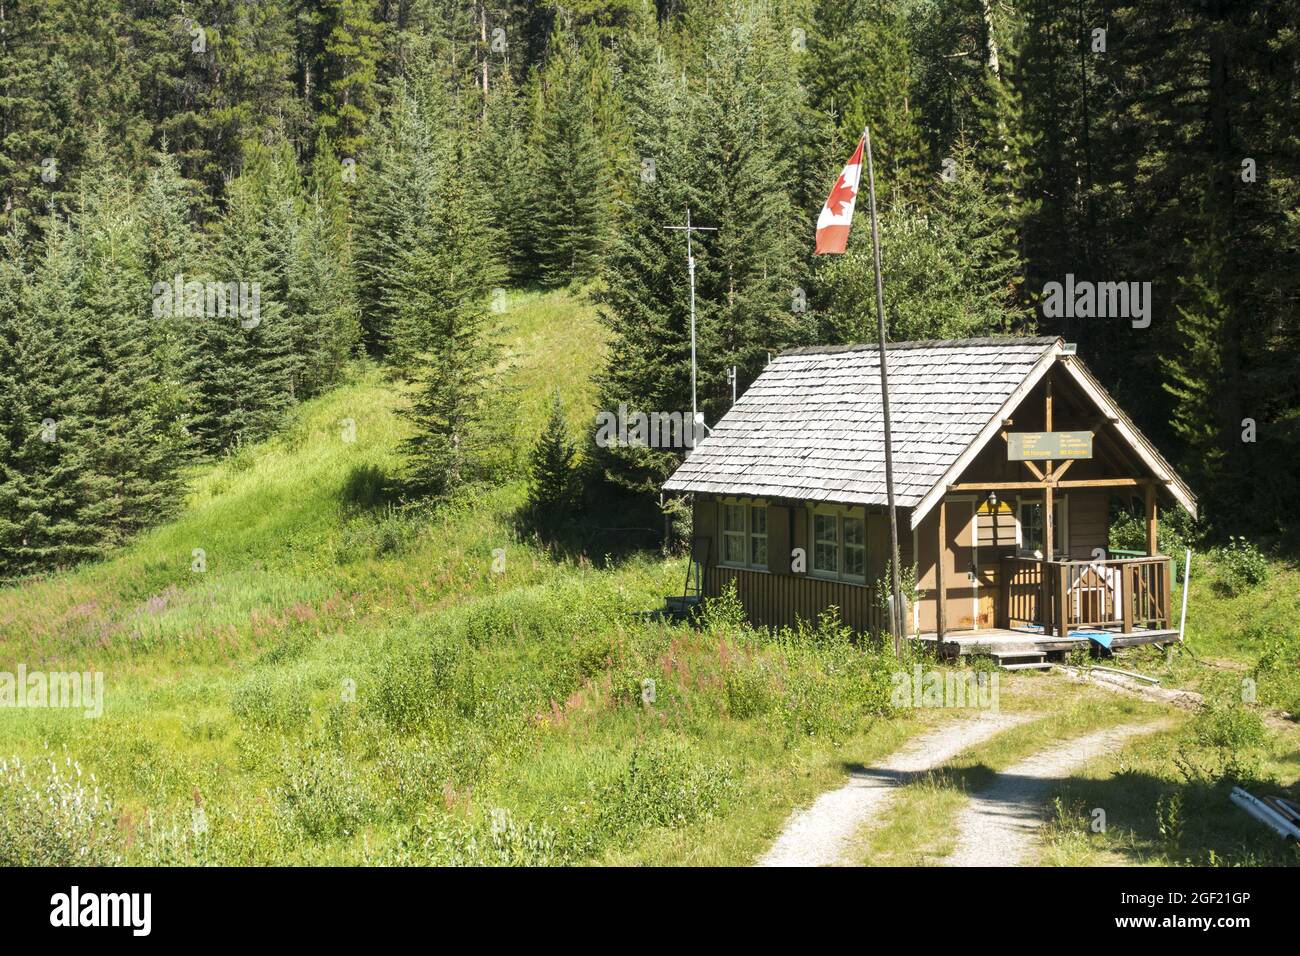 Parc national Banff Bureau de contrôle des avalanches extérieur de la cabine en bois avec drapeau canadien à Mount Norquay Alpine Meadow et Green Forest dans les Rocheuses canadiennes Banque D'Images